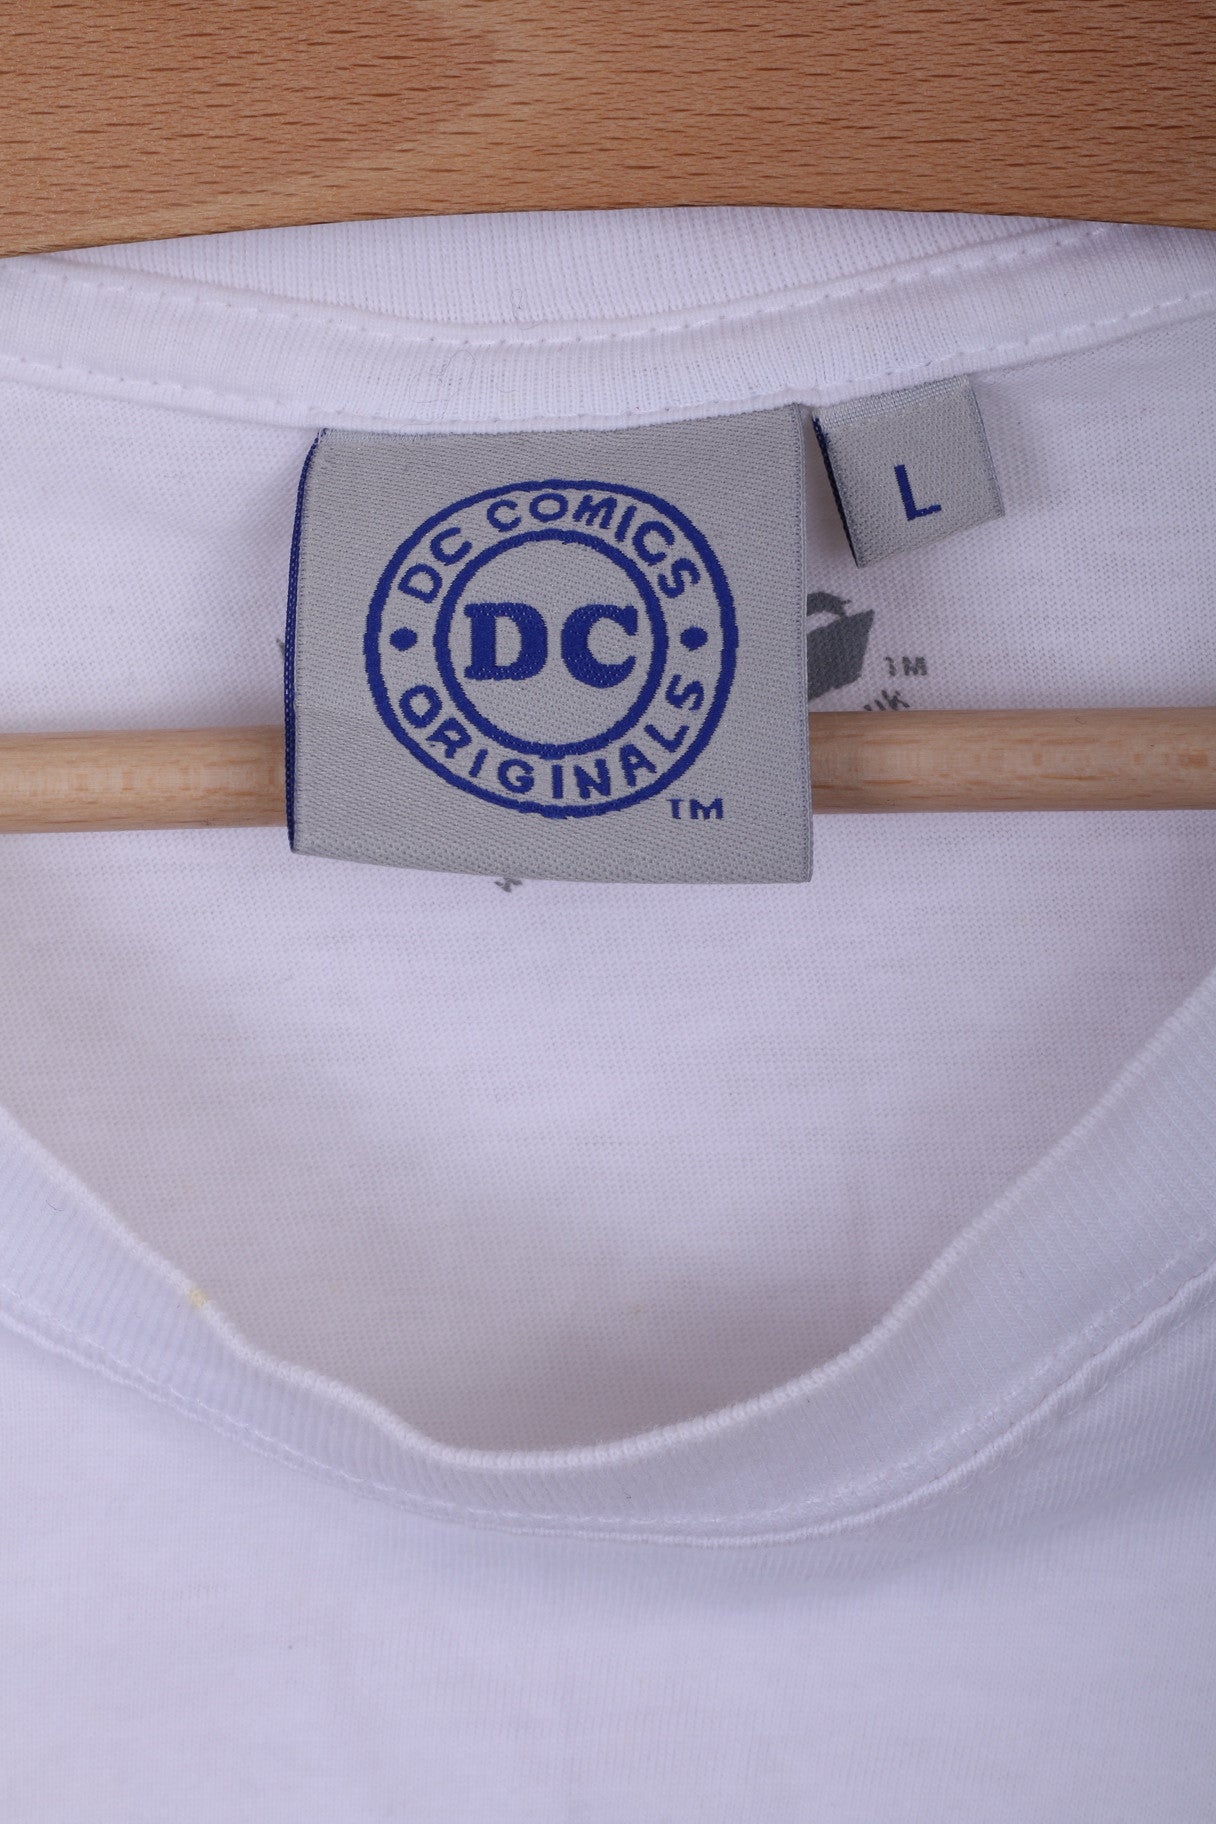 DC COMICS T-Shirt Col Ras du Cou L Homme Blanc Coton